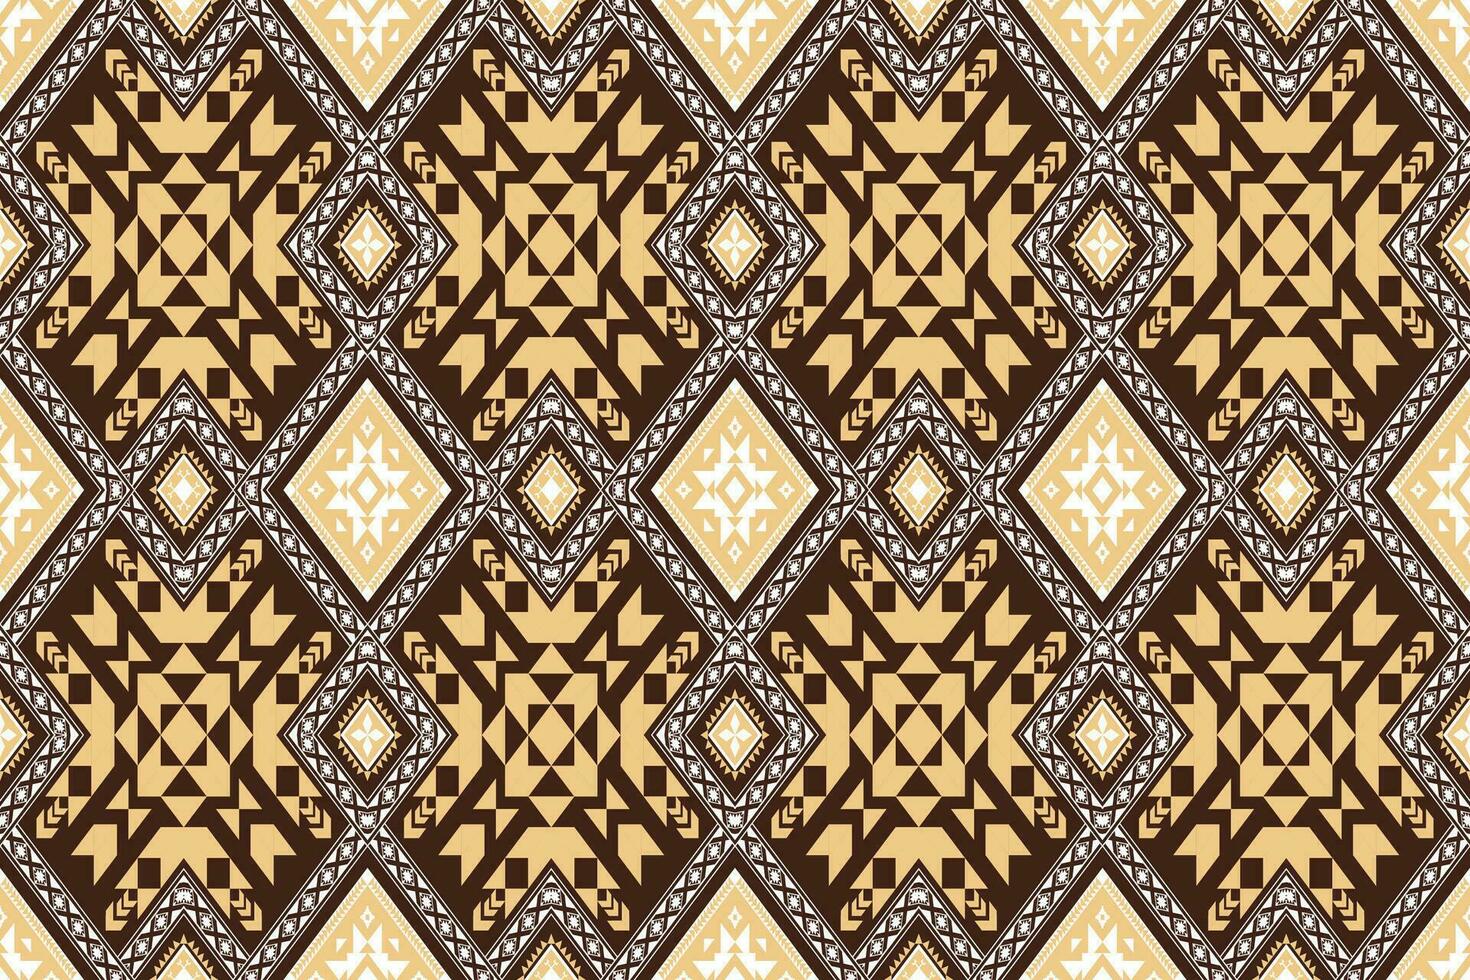 etnisch abstract ikat naadloos patroon in tribal.stof Indisch en maxicaans stijl. ontwerp voor achtergrond, behang, illustratie, kleding stof, kleding, tapijt, textiel, batik, borduurwerk. vector